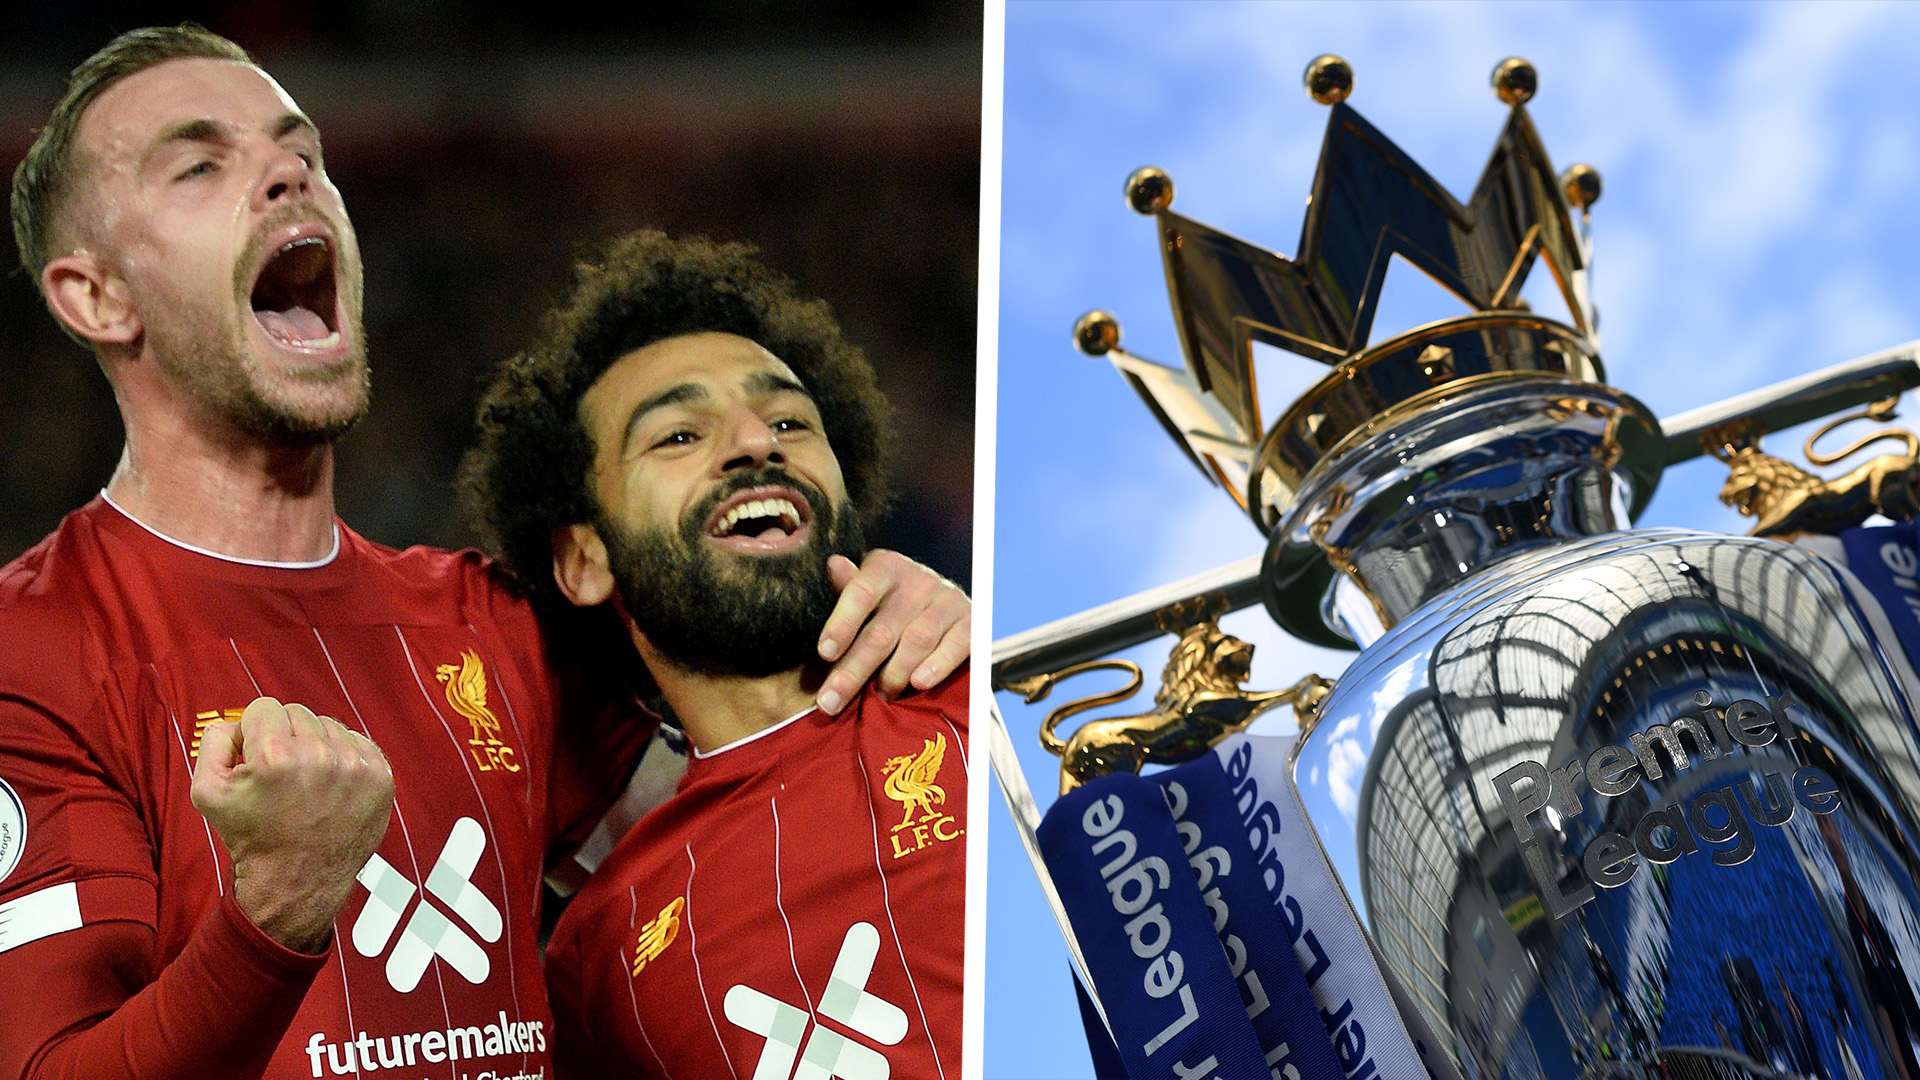 La Premier League soutiendra la présentation du trophée pour Liverpool s’ils sont couronnés champions